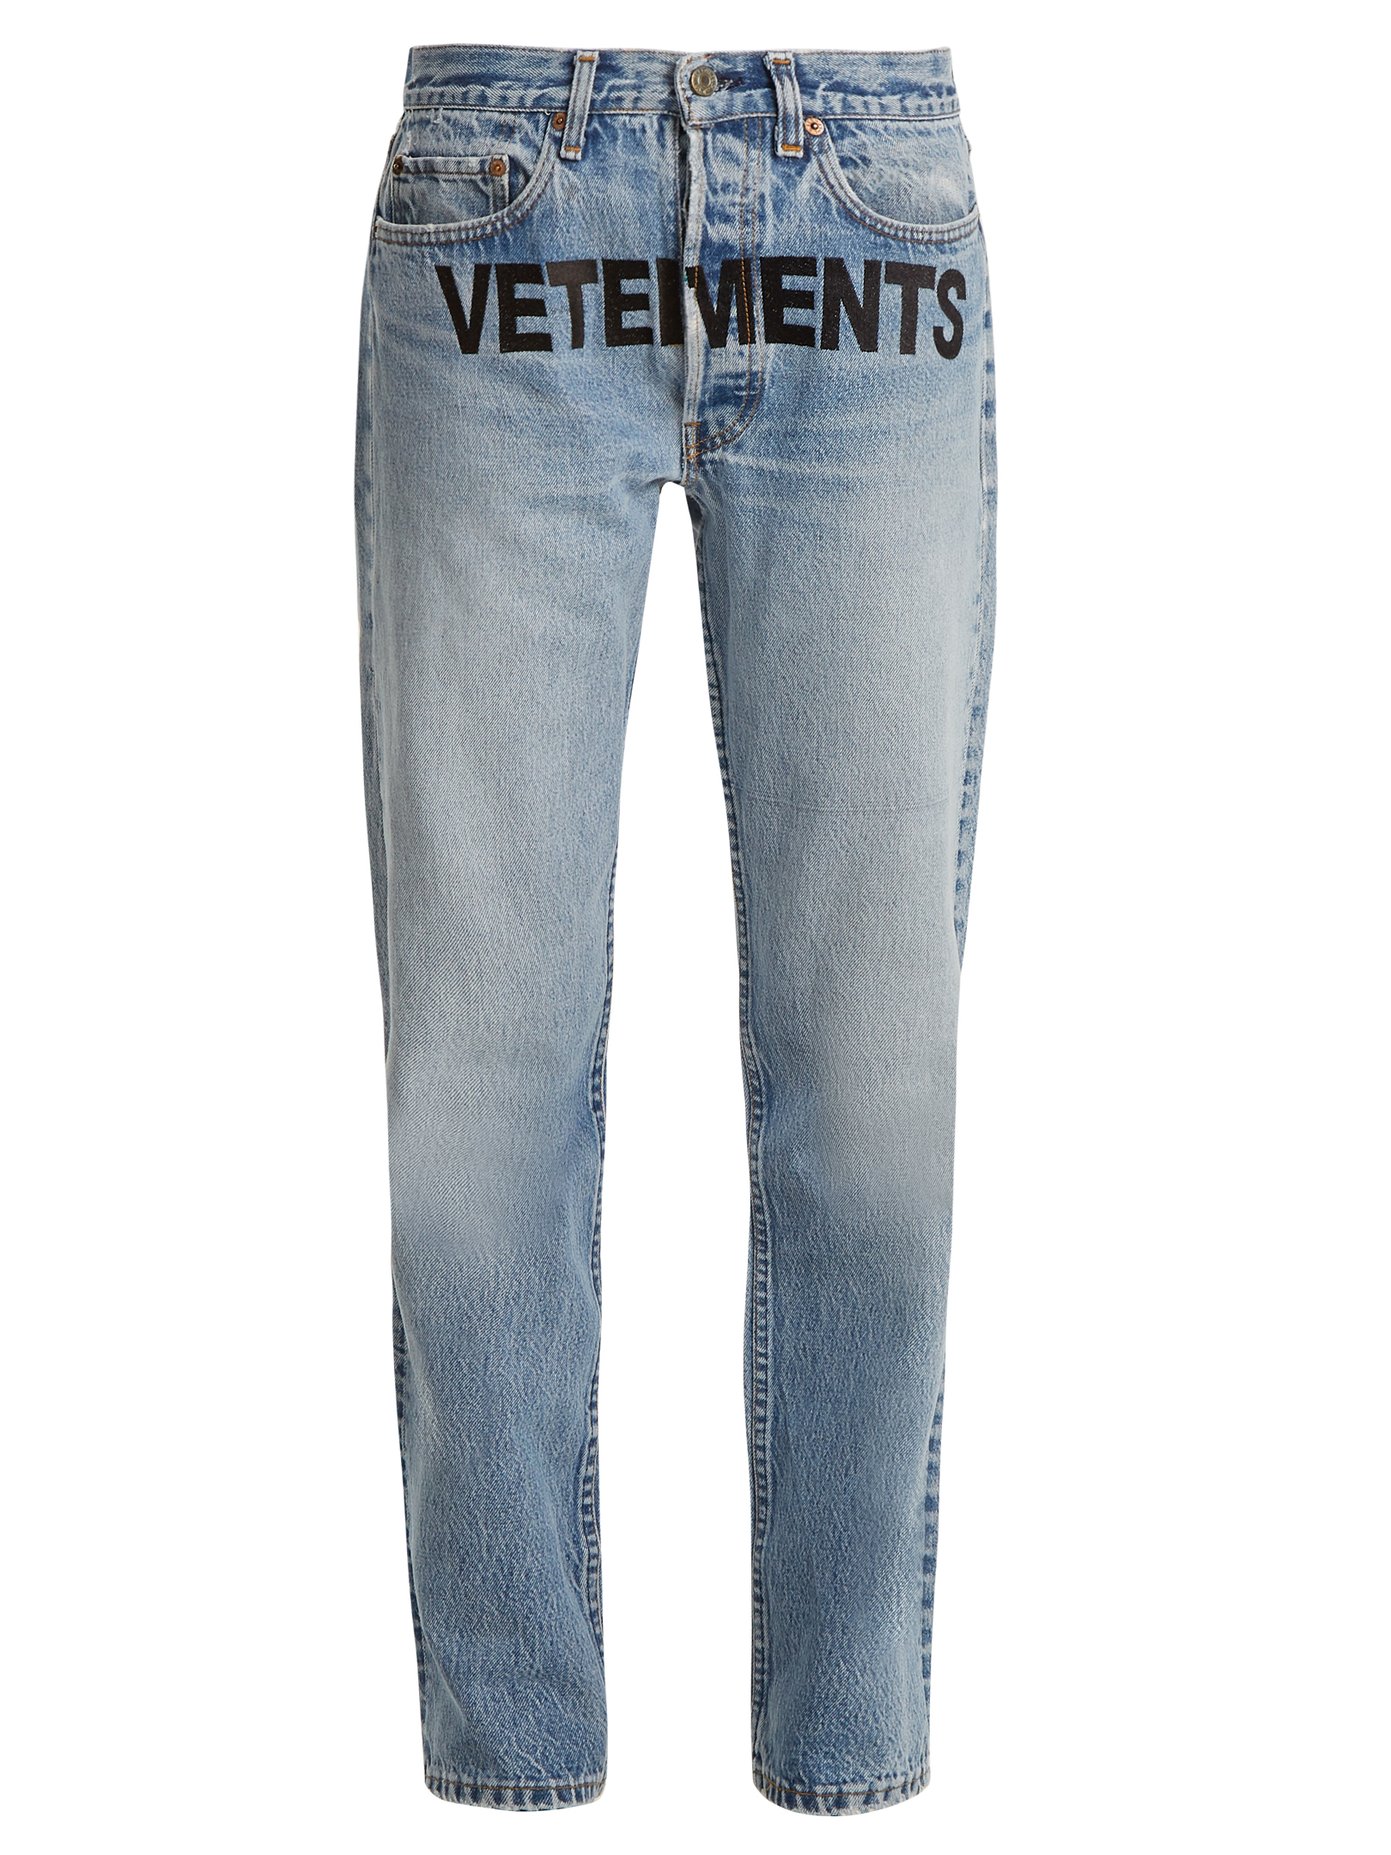 levis vetements jeans